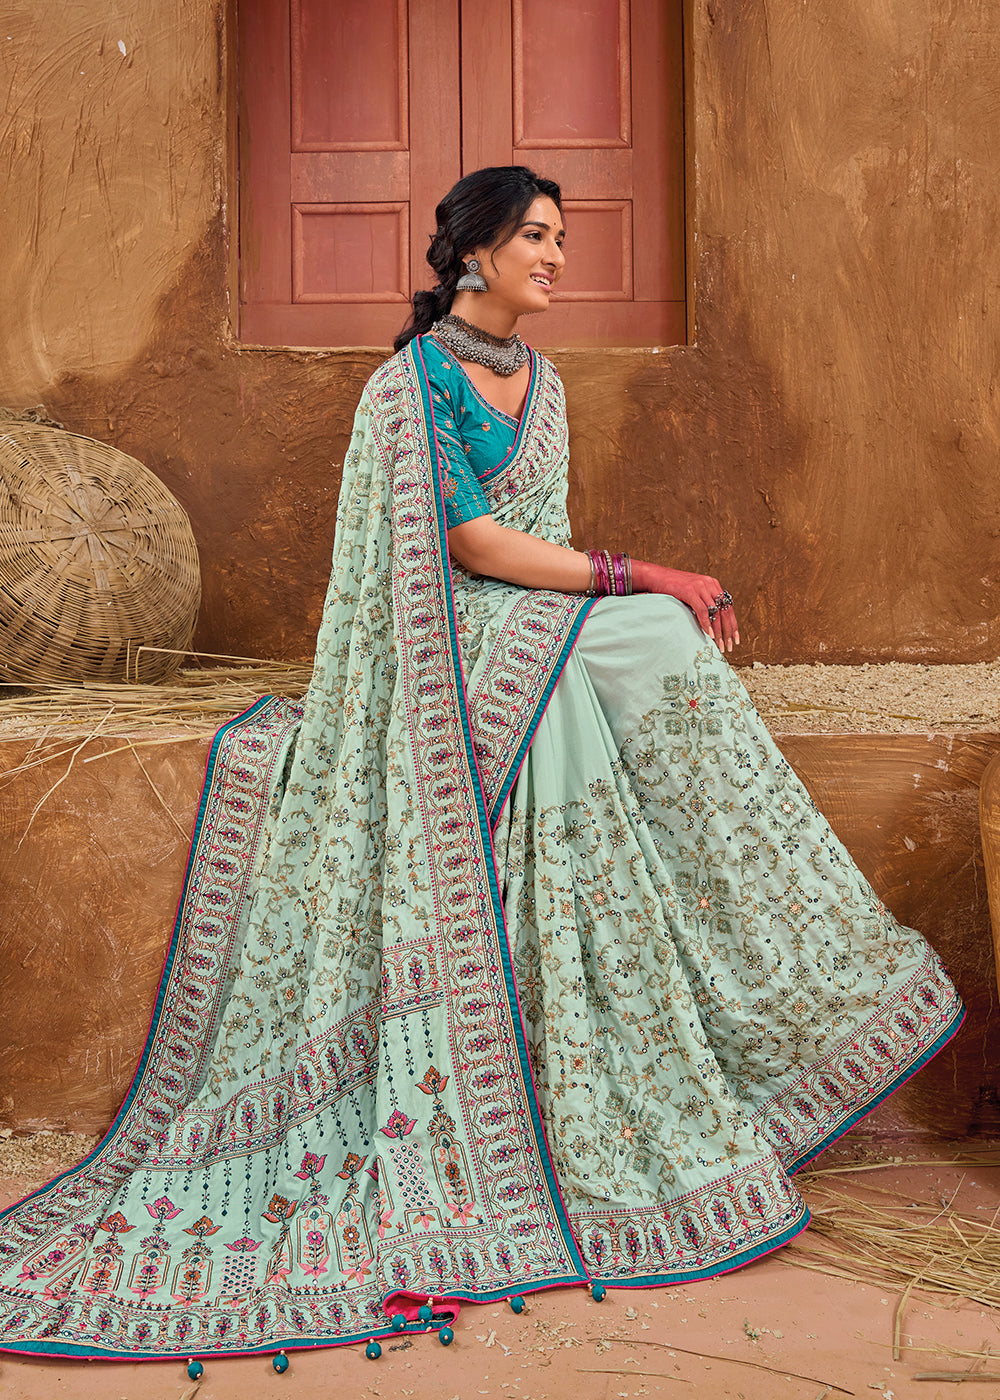 Buy Now Blue Kachhi & Mirror Work Traditional Banarasi Saree Online in USA, UK, Canada & Worldwide at Empress Clothing